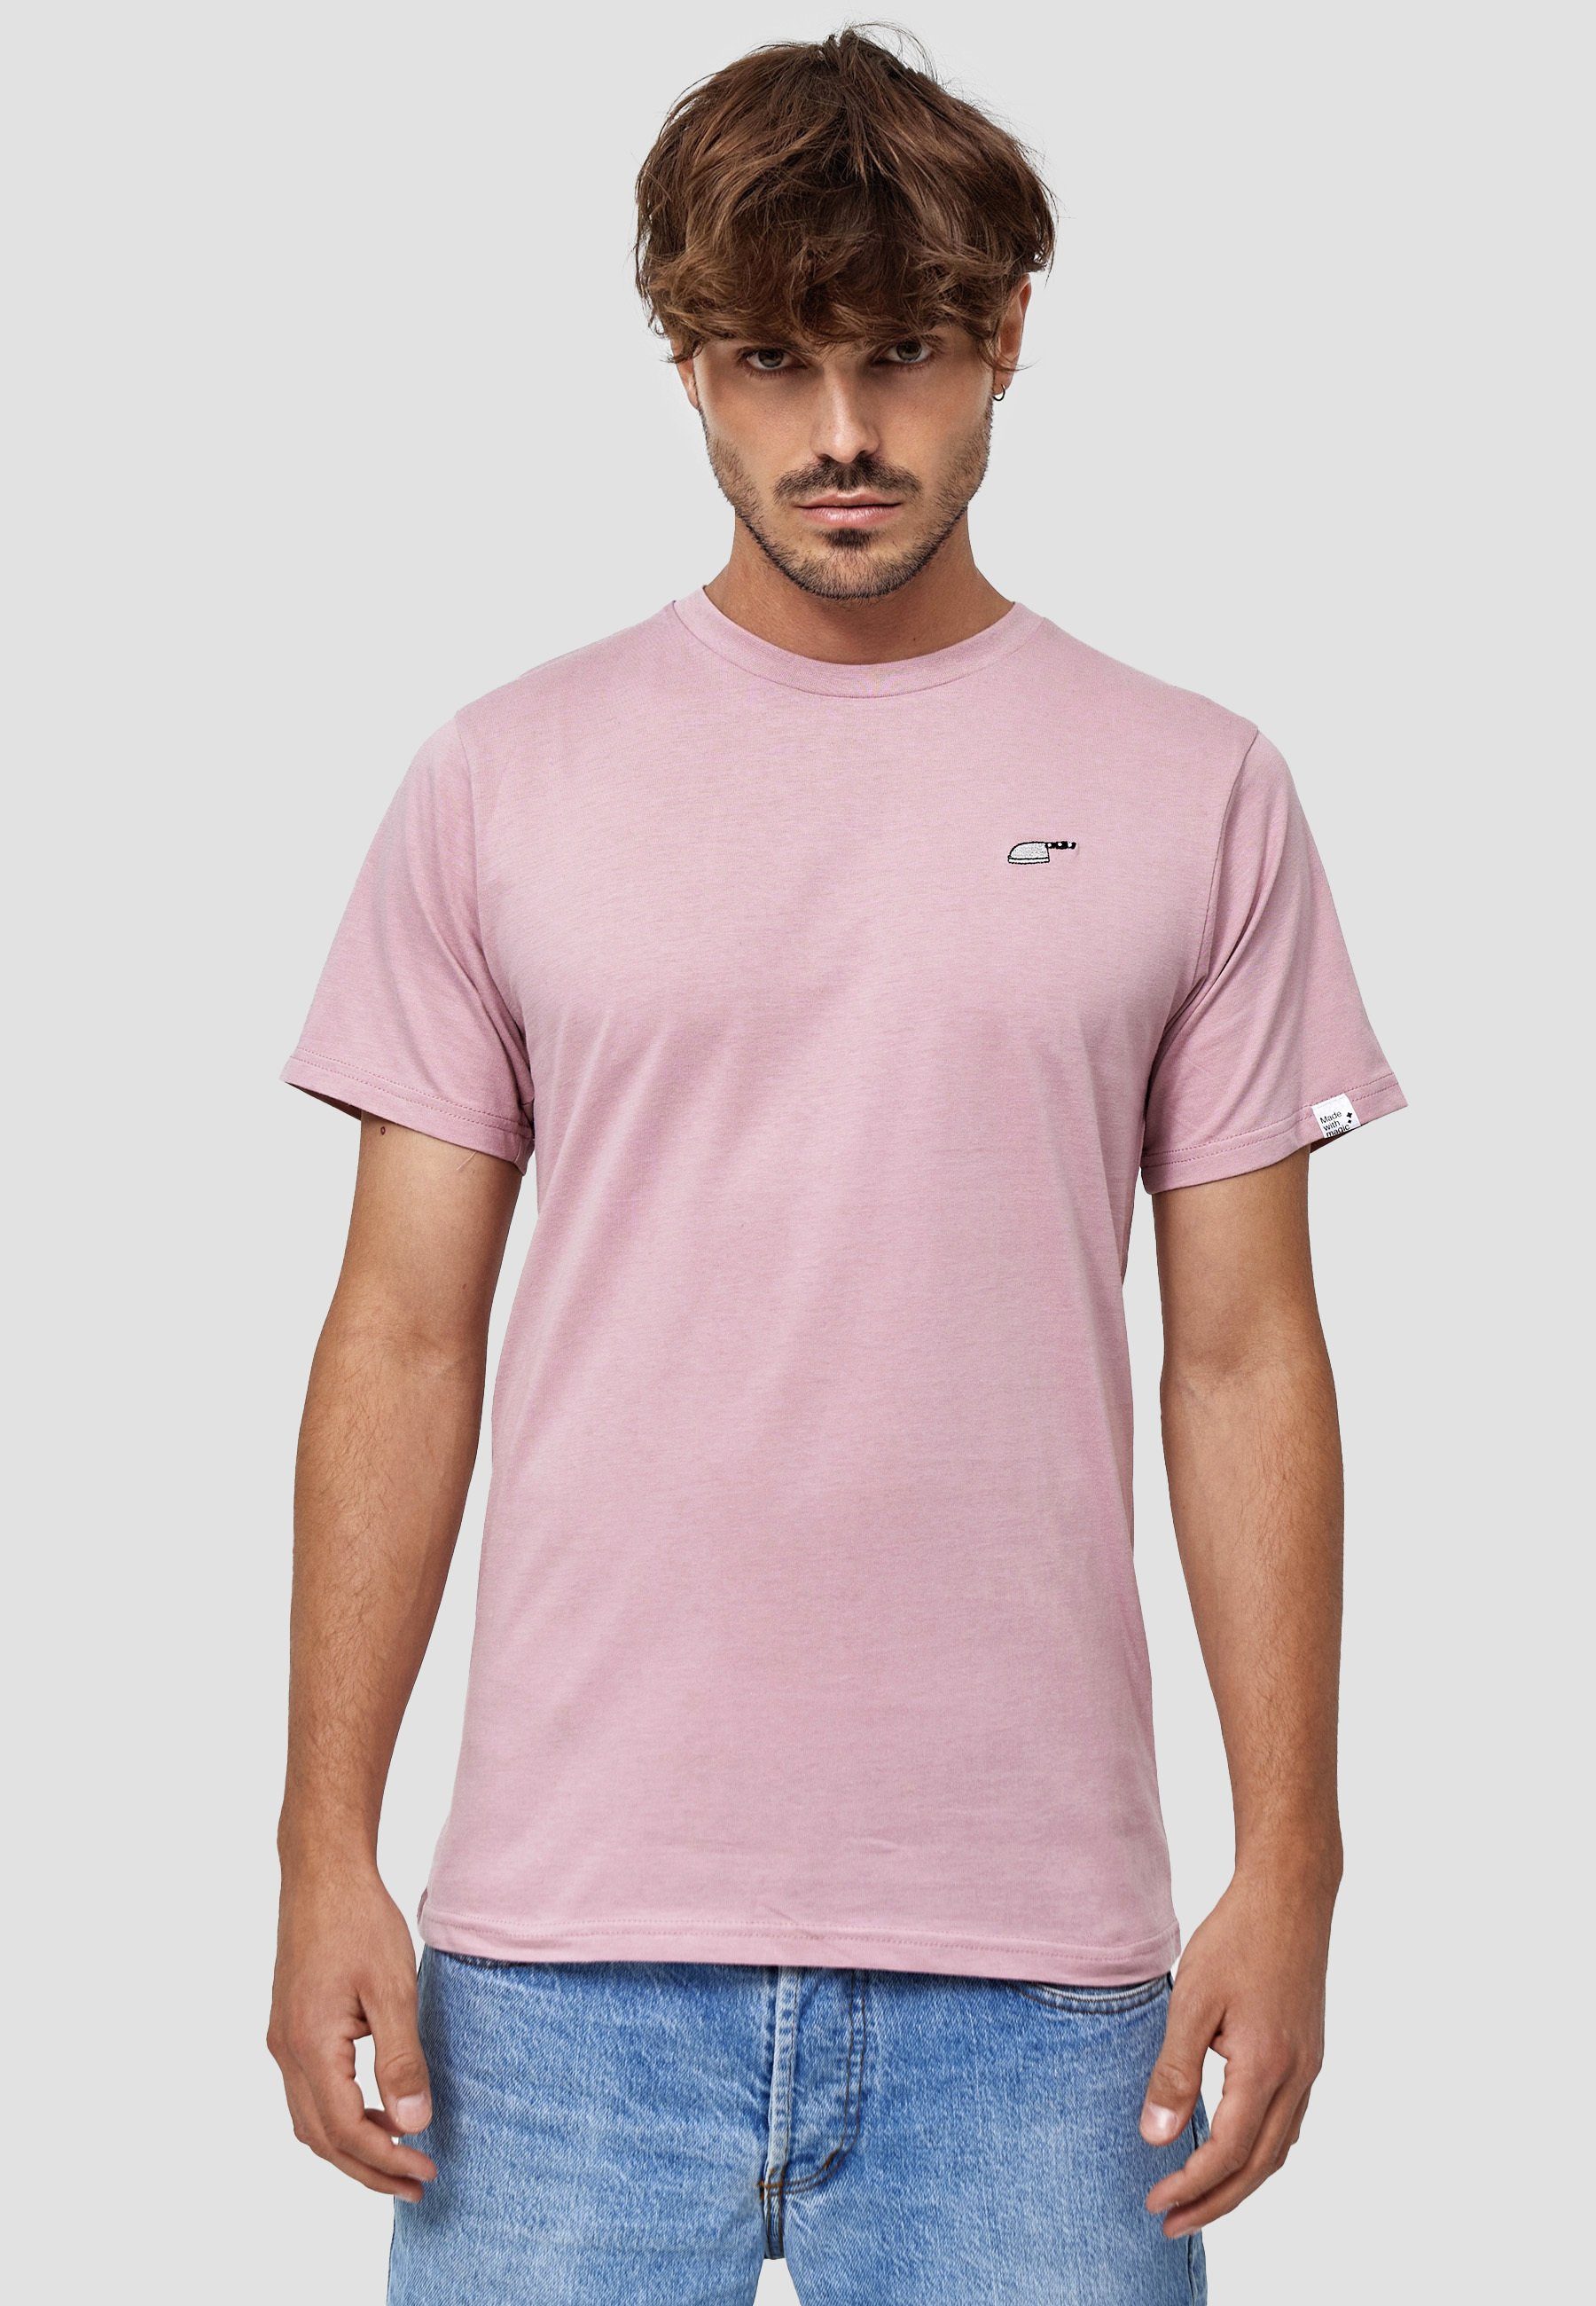 MIKON T-Shirt Messer GOTS zertifizierte Bio-Baumwolle Pink